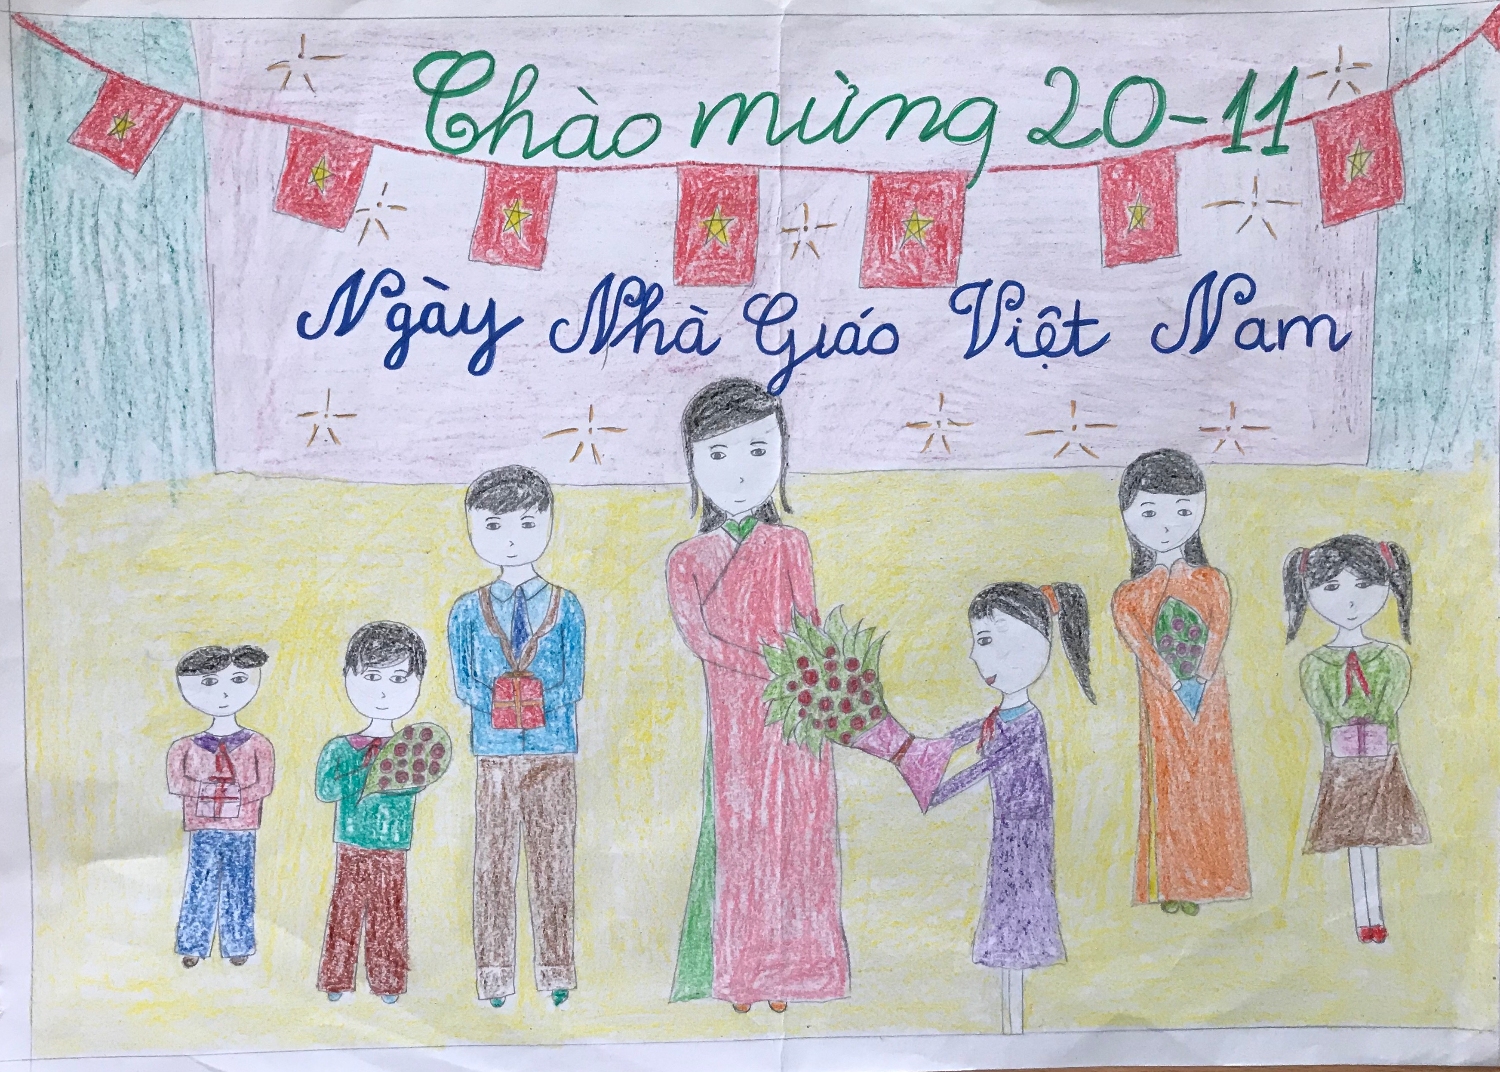 Ngày Nhà Giáo Việt Nam: Hôm nay là ngày đặc biệt của các thầy cô giáo tại Việt Nam. Đây là dịp để tôn vinh công lao của các nhà giáo và cũng là cơ hội để chúng ta bày tỏ lòng biết ơn đối với sự dạy dỗ, giáo dục mà các thầy cô đã dành cho chúng ta. Hãy xem hình ảnh liên quan đến Ngày Nhà Giáo Việt Nam để hoan nghênh và kính trọng các nhà giáo!